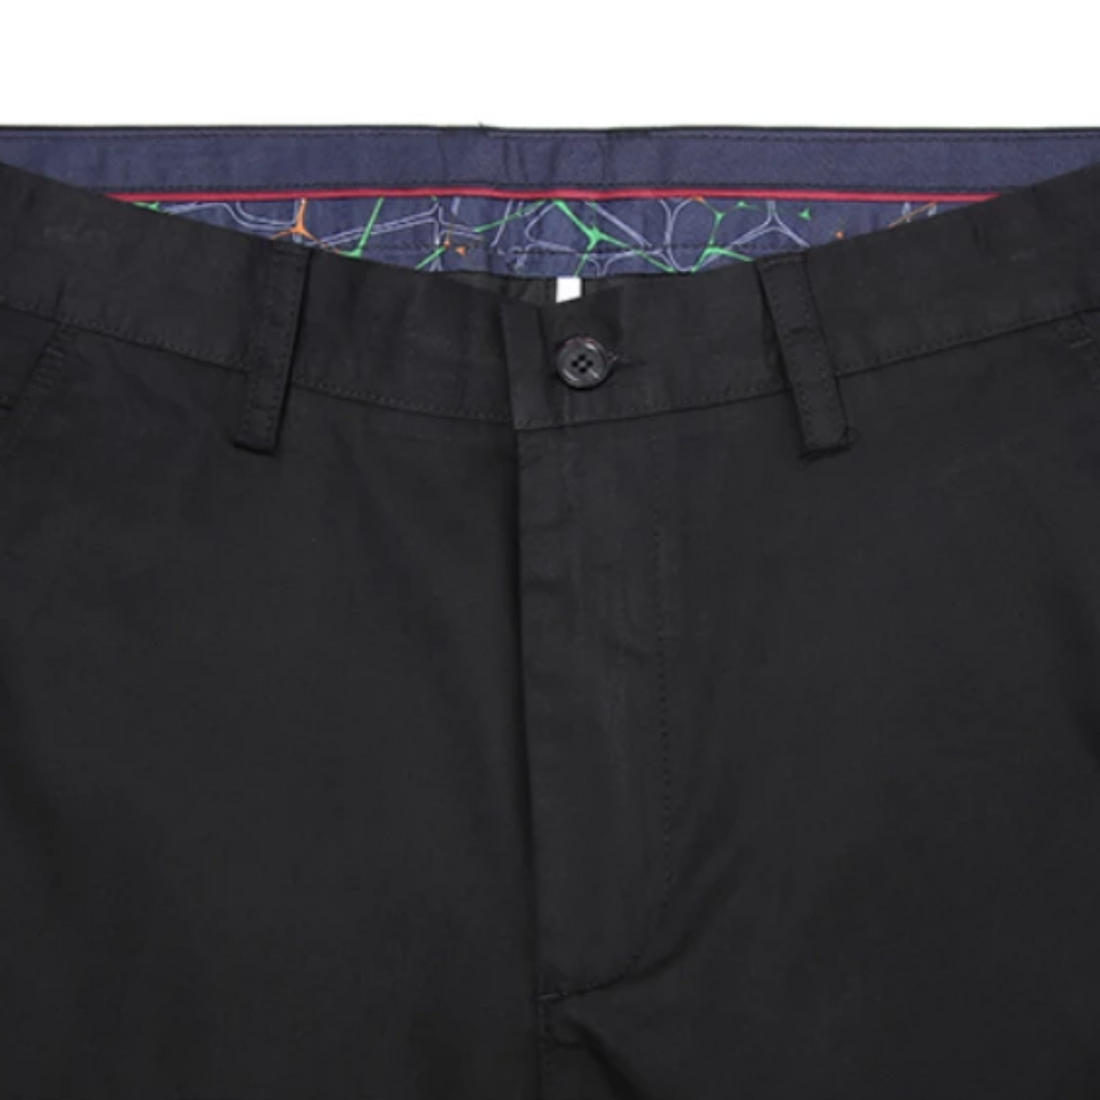 Men's Summer Casual Cotton Slim Pants